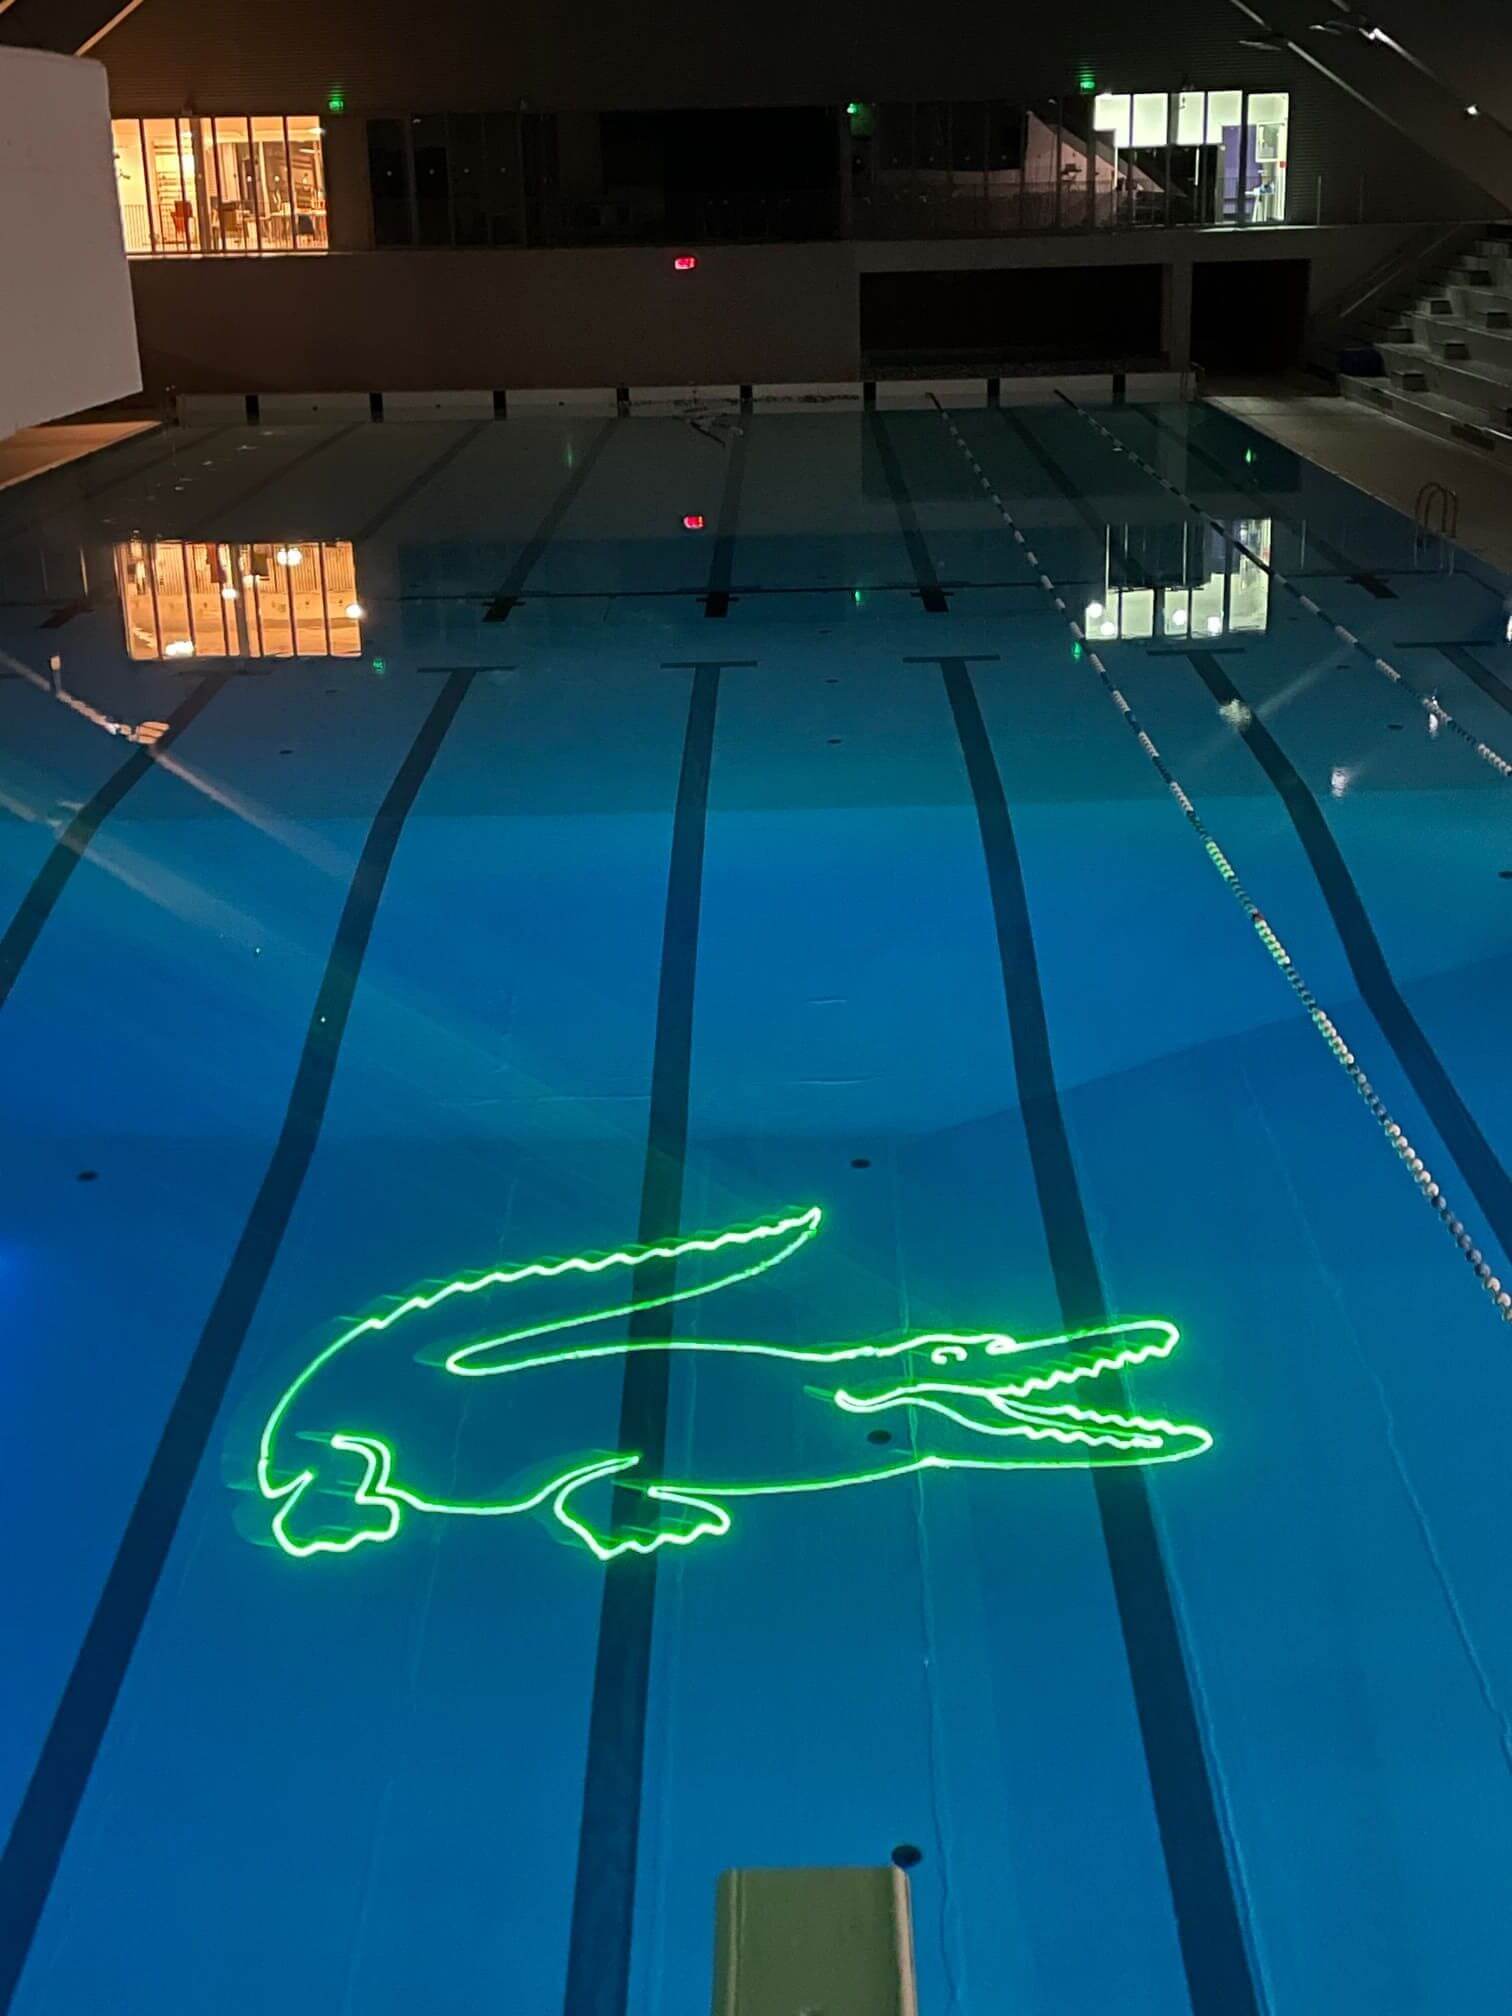 Europe Évènement - Projection de logo et écriture - Photo d'une piscine avec un logo en forme de crocodile (Lacoste) projeté au fond de l'eau